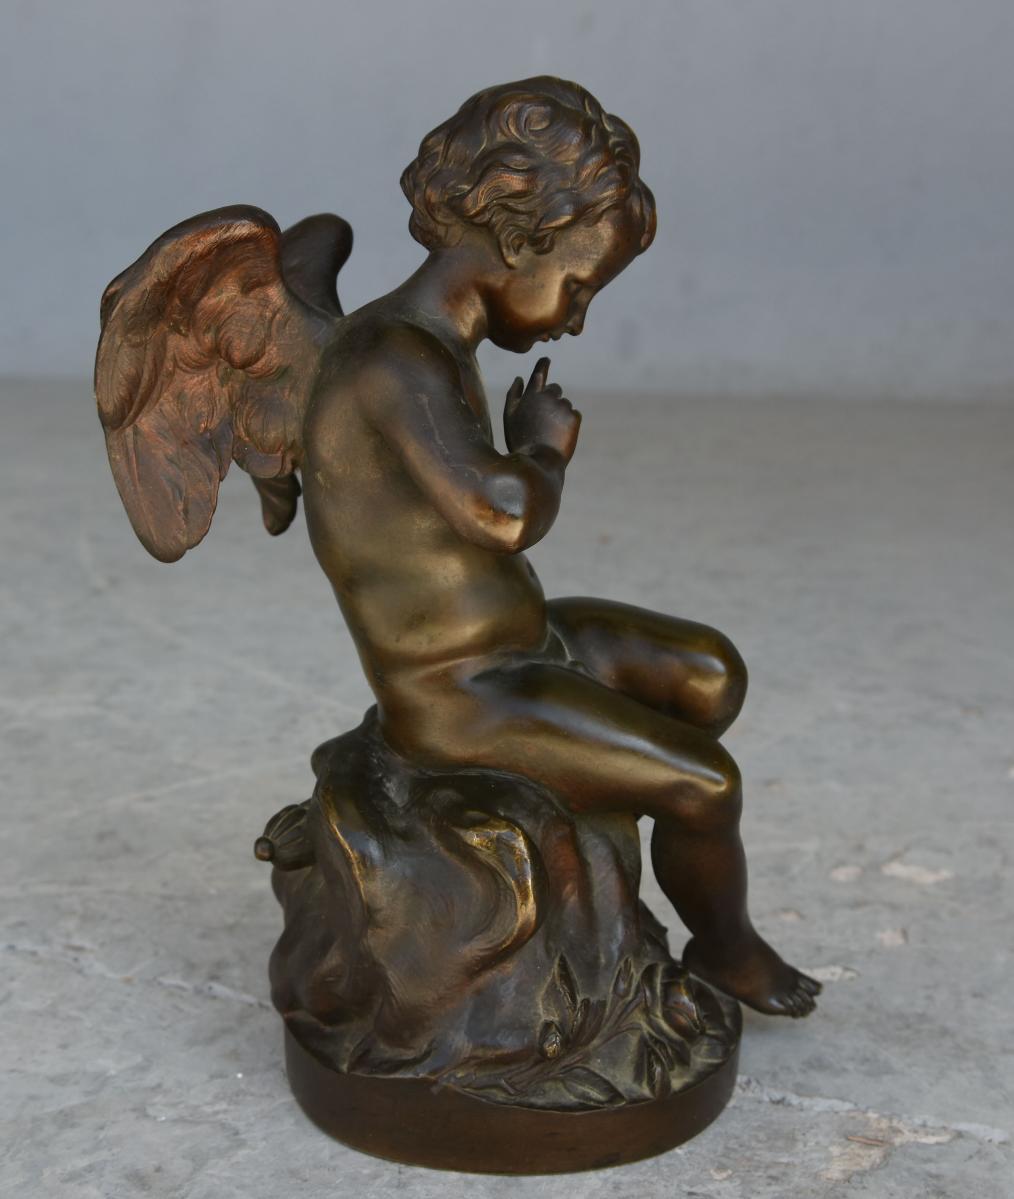 Ende des 19. Jahrhunderts Amor Bronze patiniert vergoldet Dimension: 27 cm hoch durch 15 cm durch 12 cm. Gründer der Firma Richaud et Cie in Marseille. Modell nach Falconet.